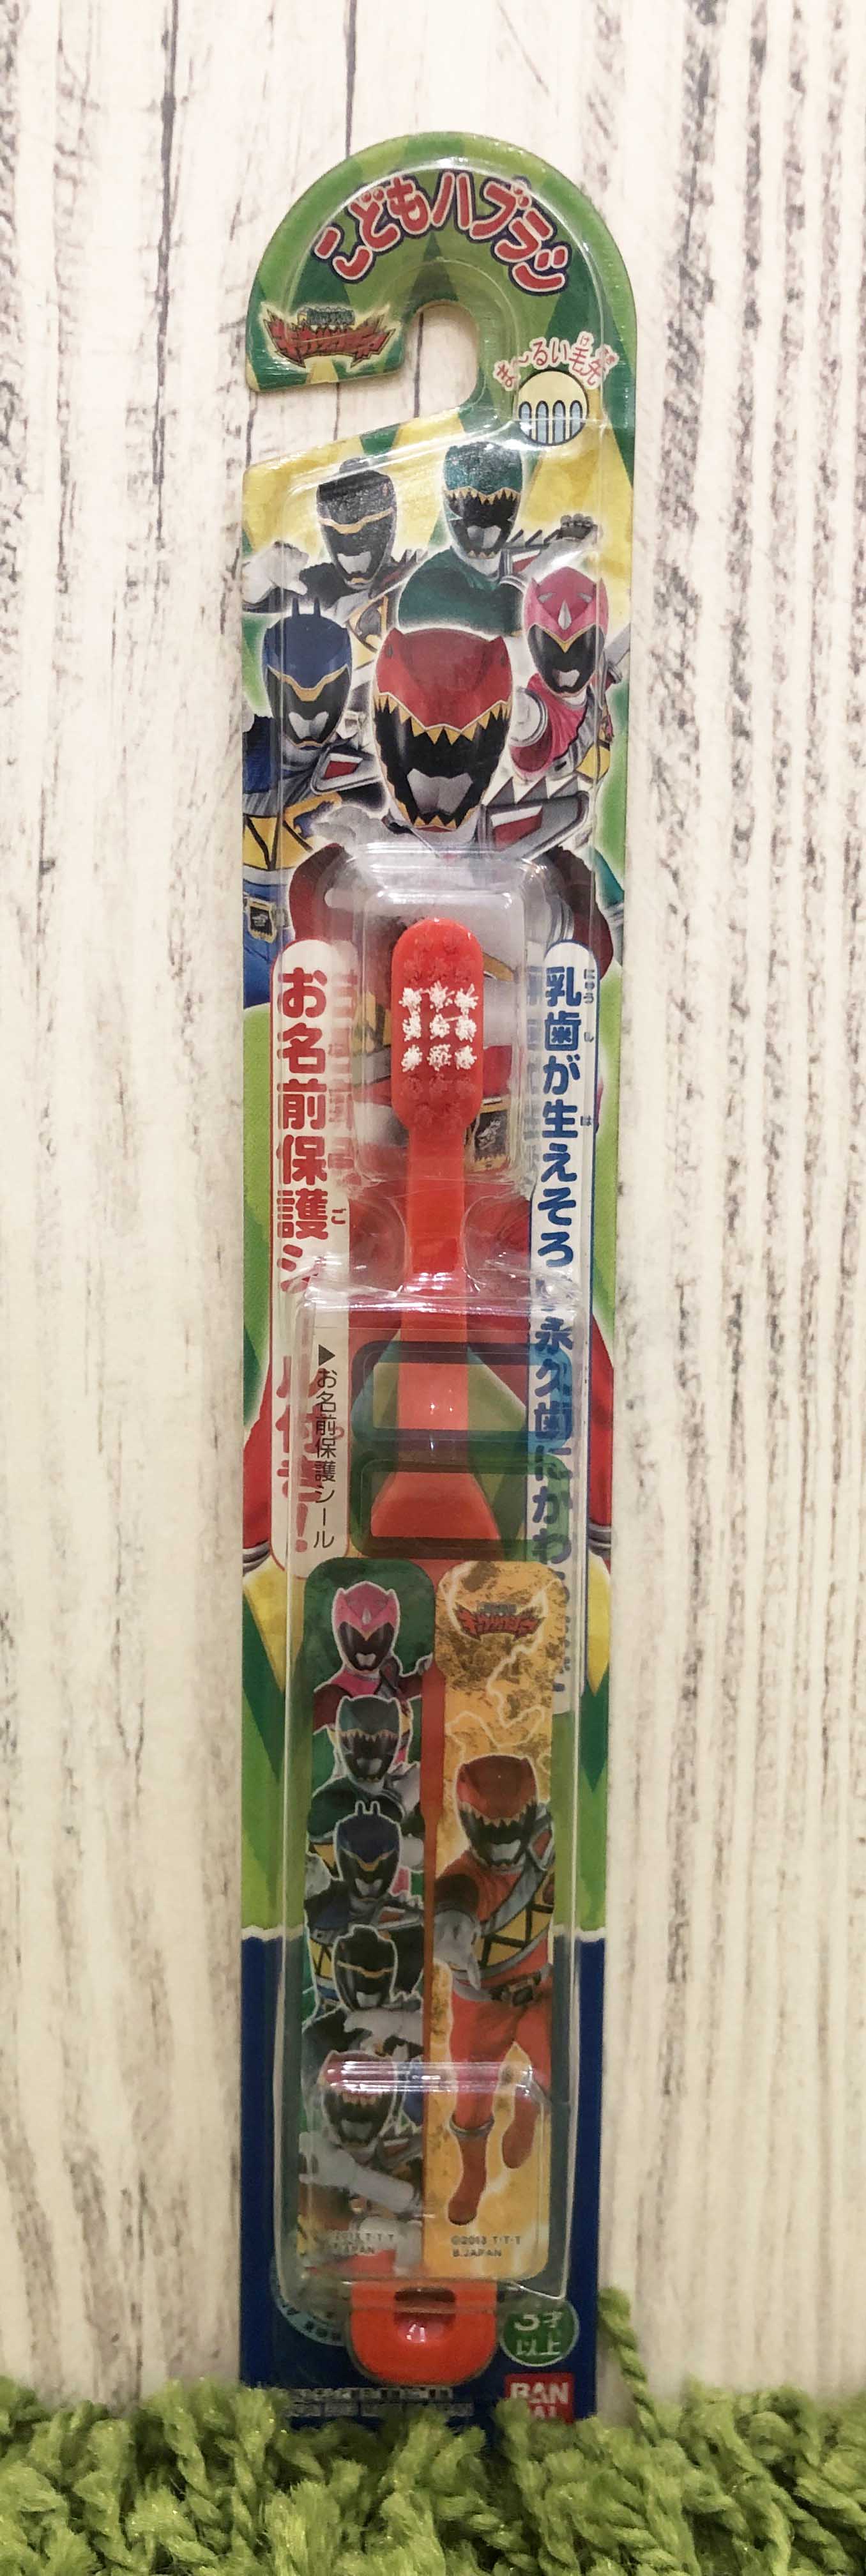 【震撼精品百貨】超級戰隊系列~機器戰隊牙刷-紅*75448